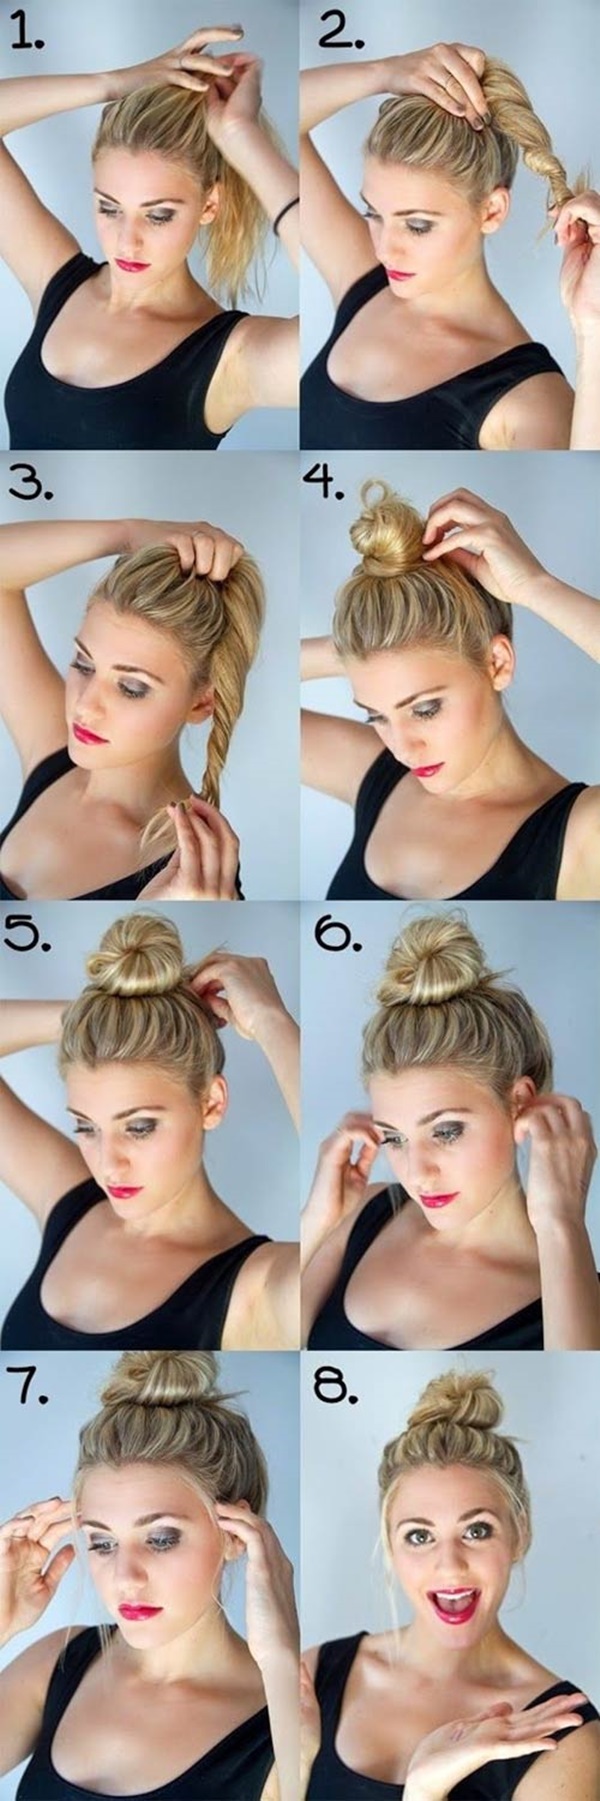 4 kiểu tóc thời trang đơn giản mà đẹp cho cô nàng bận rộn